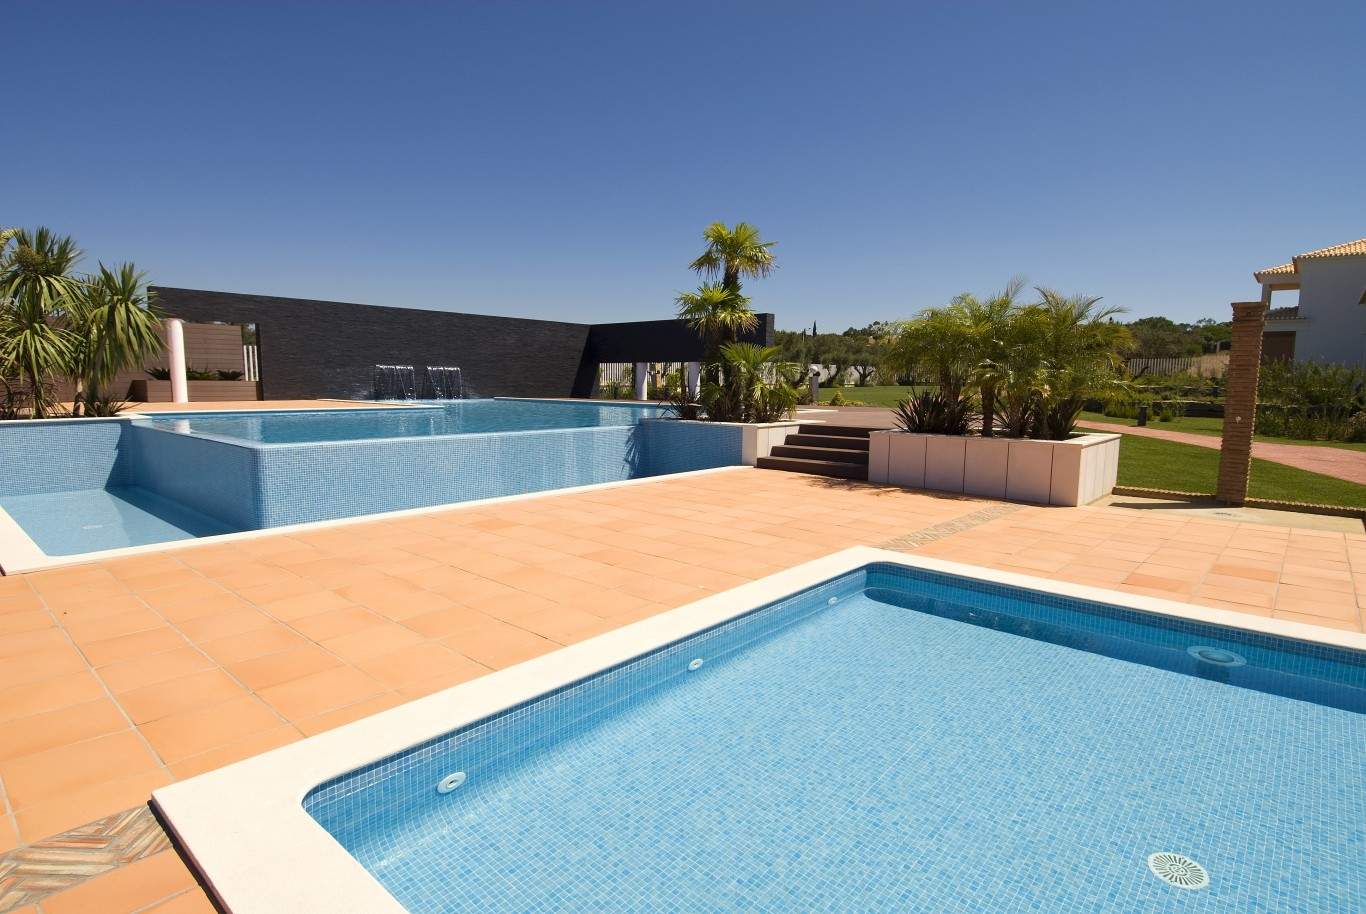 Venda de moradia nova, com piscina, ao golfe de Vilamoura, Algarve_54168